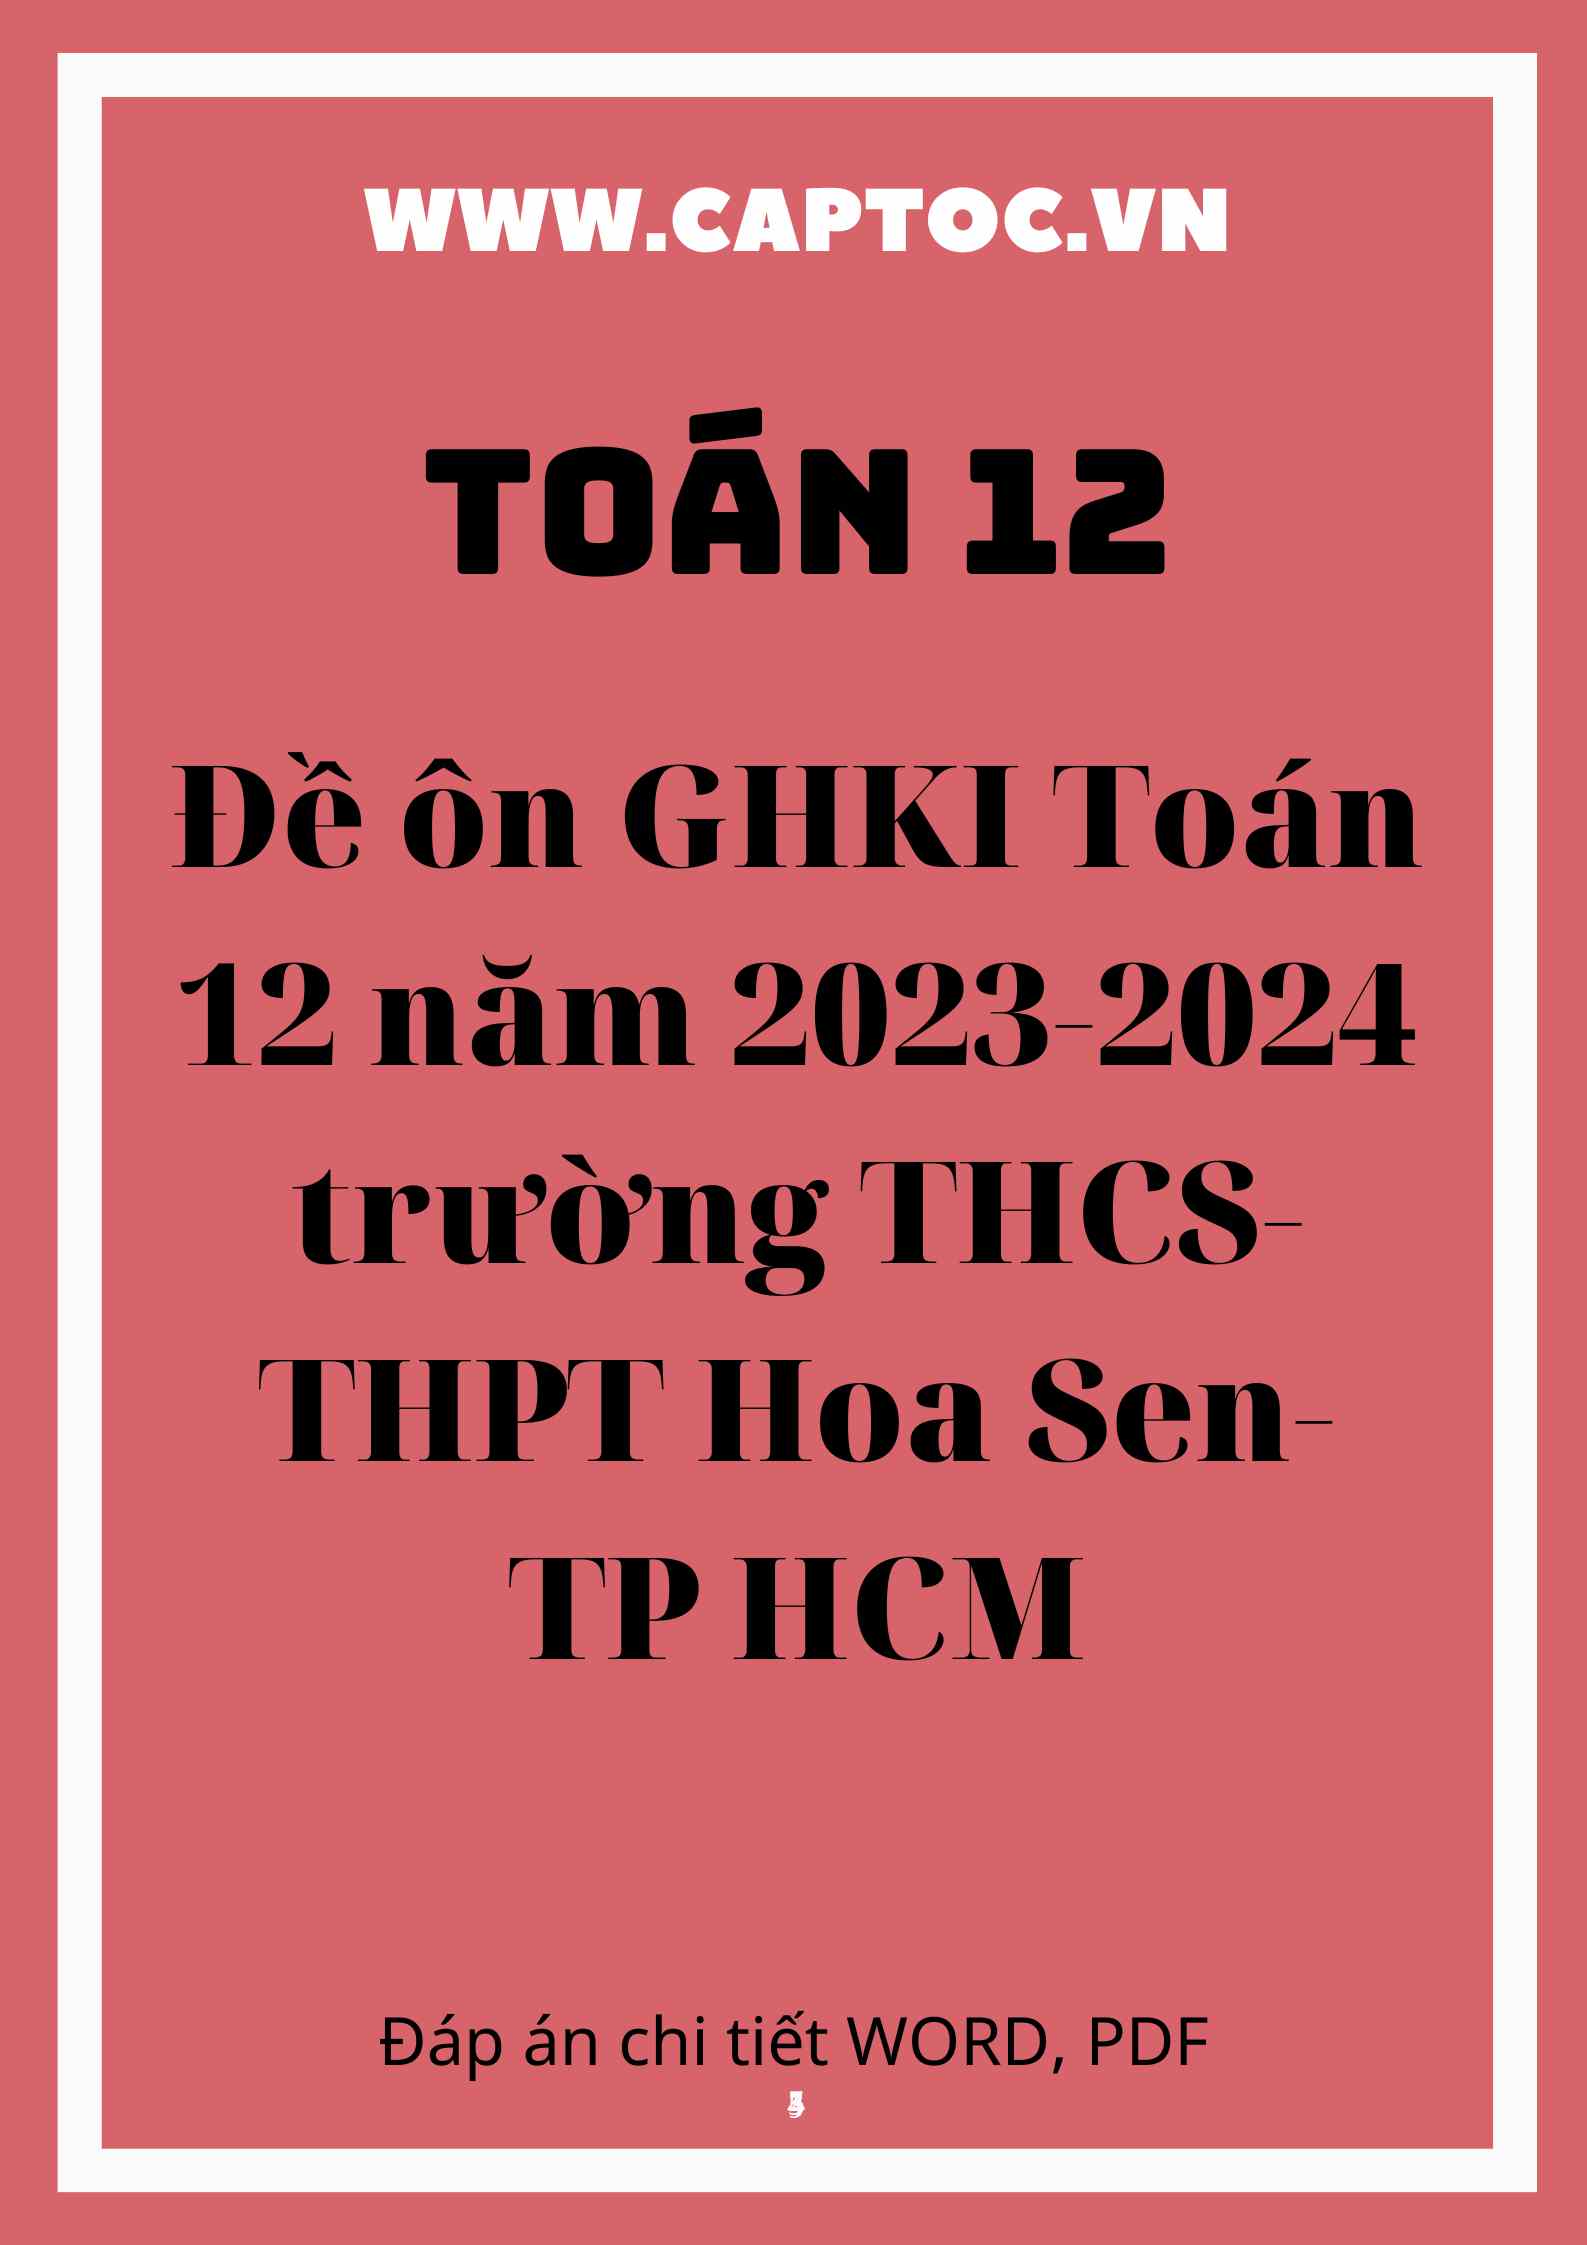 Đề ôn GHKI Toán 12 năm 2023-2024 trường THCS-THPT Hoa Sen-TP HCM